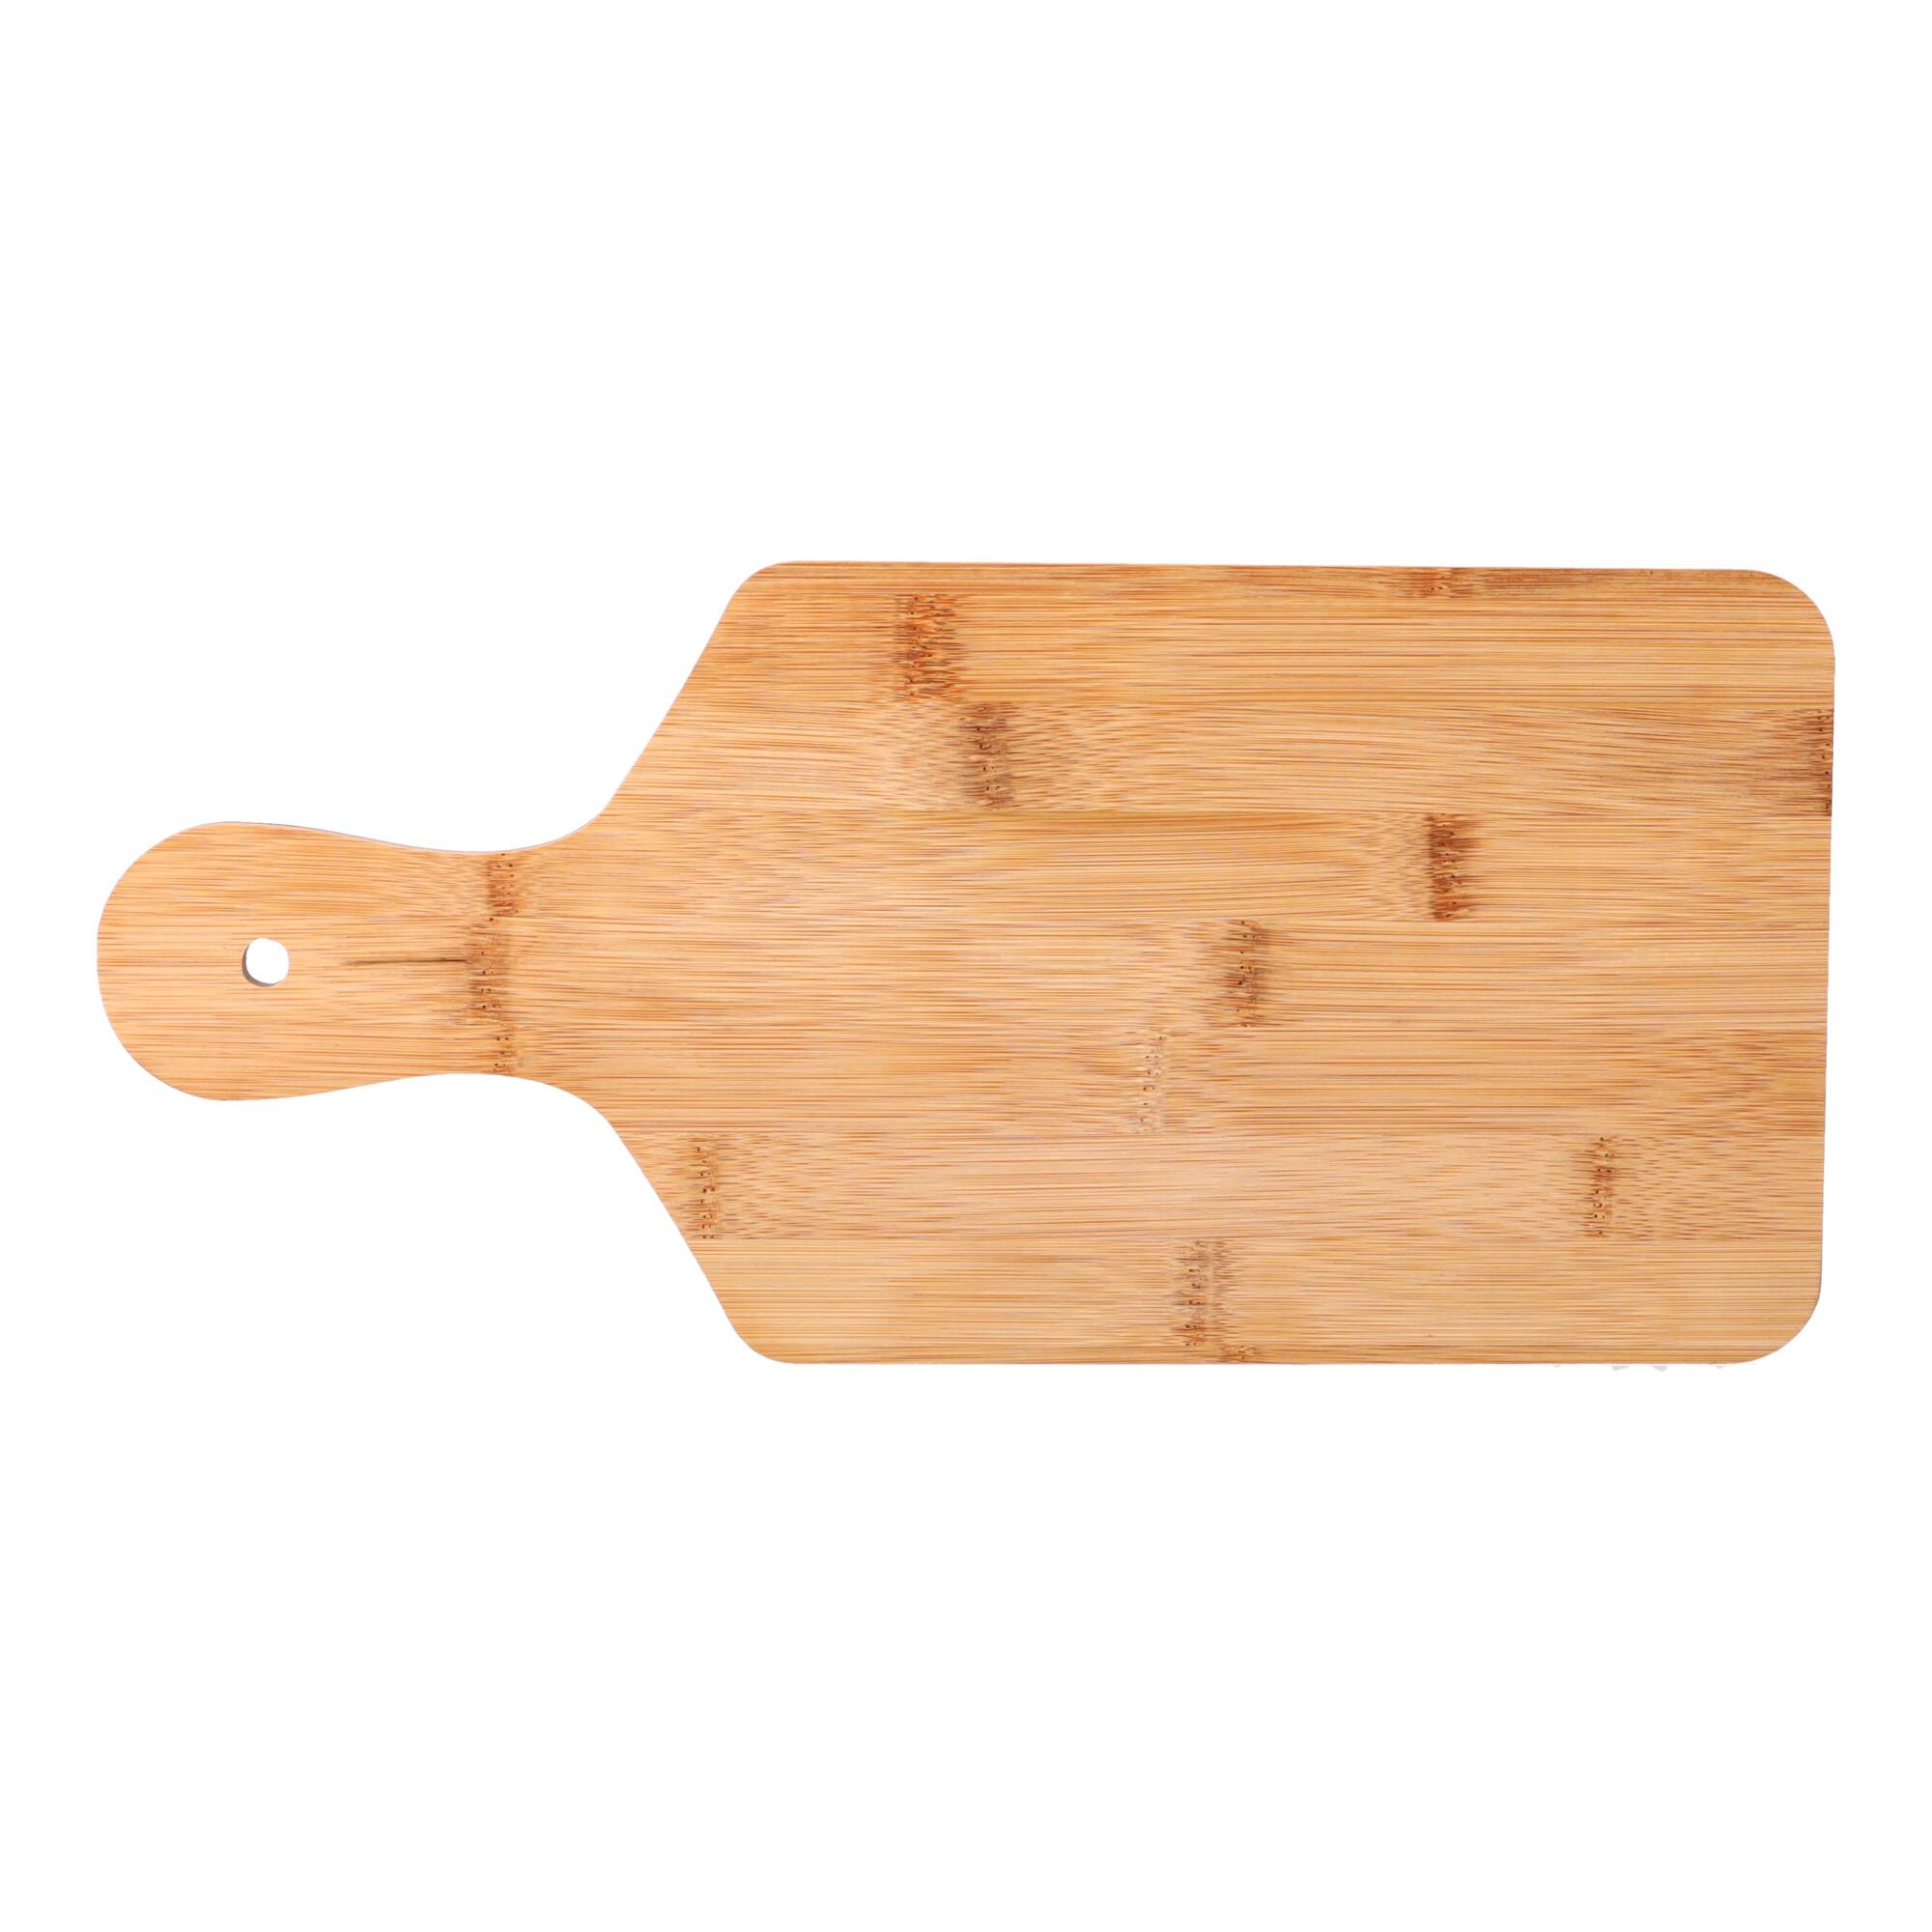 Drewniana deska do pizzy - prostokątna, mała